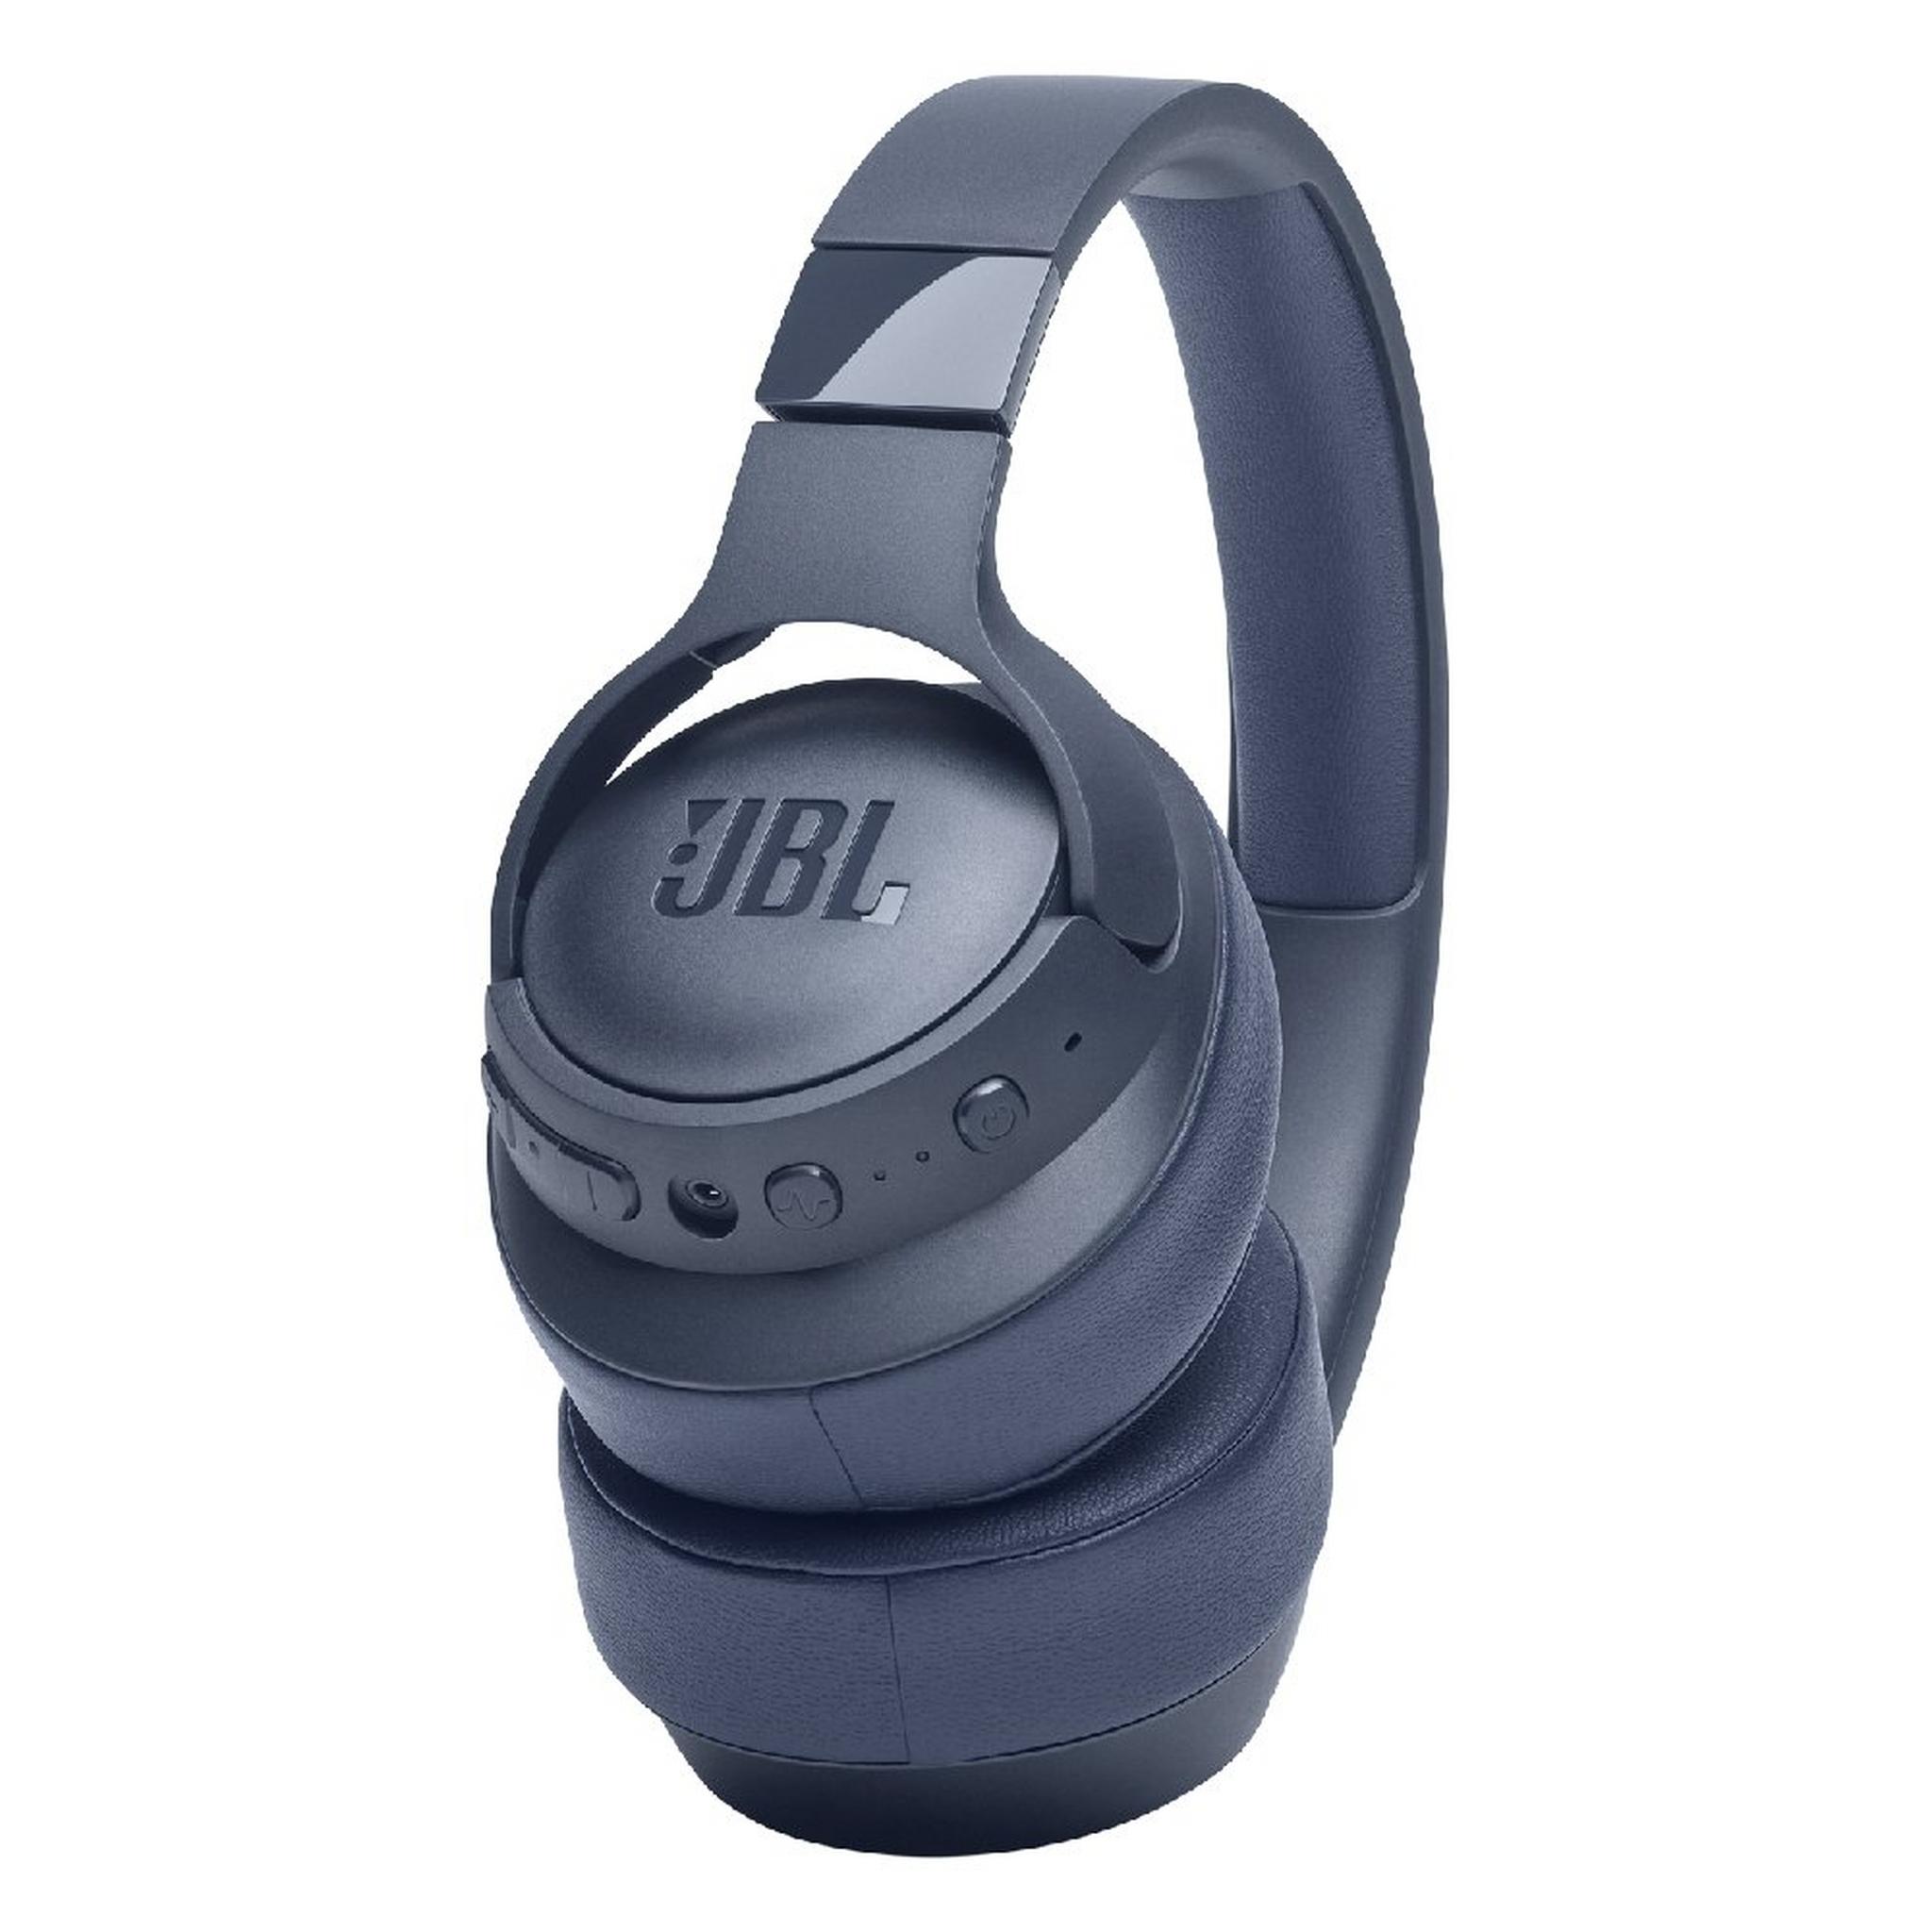 سماعة رأس جي بي ال تيون 760 ان سي لاسلكية مع تقنية إلغاء الضوضاء 35 ساعة - ازرق